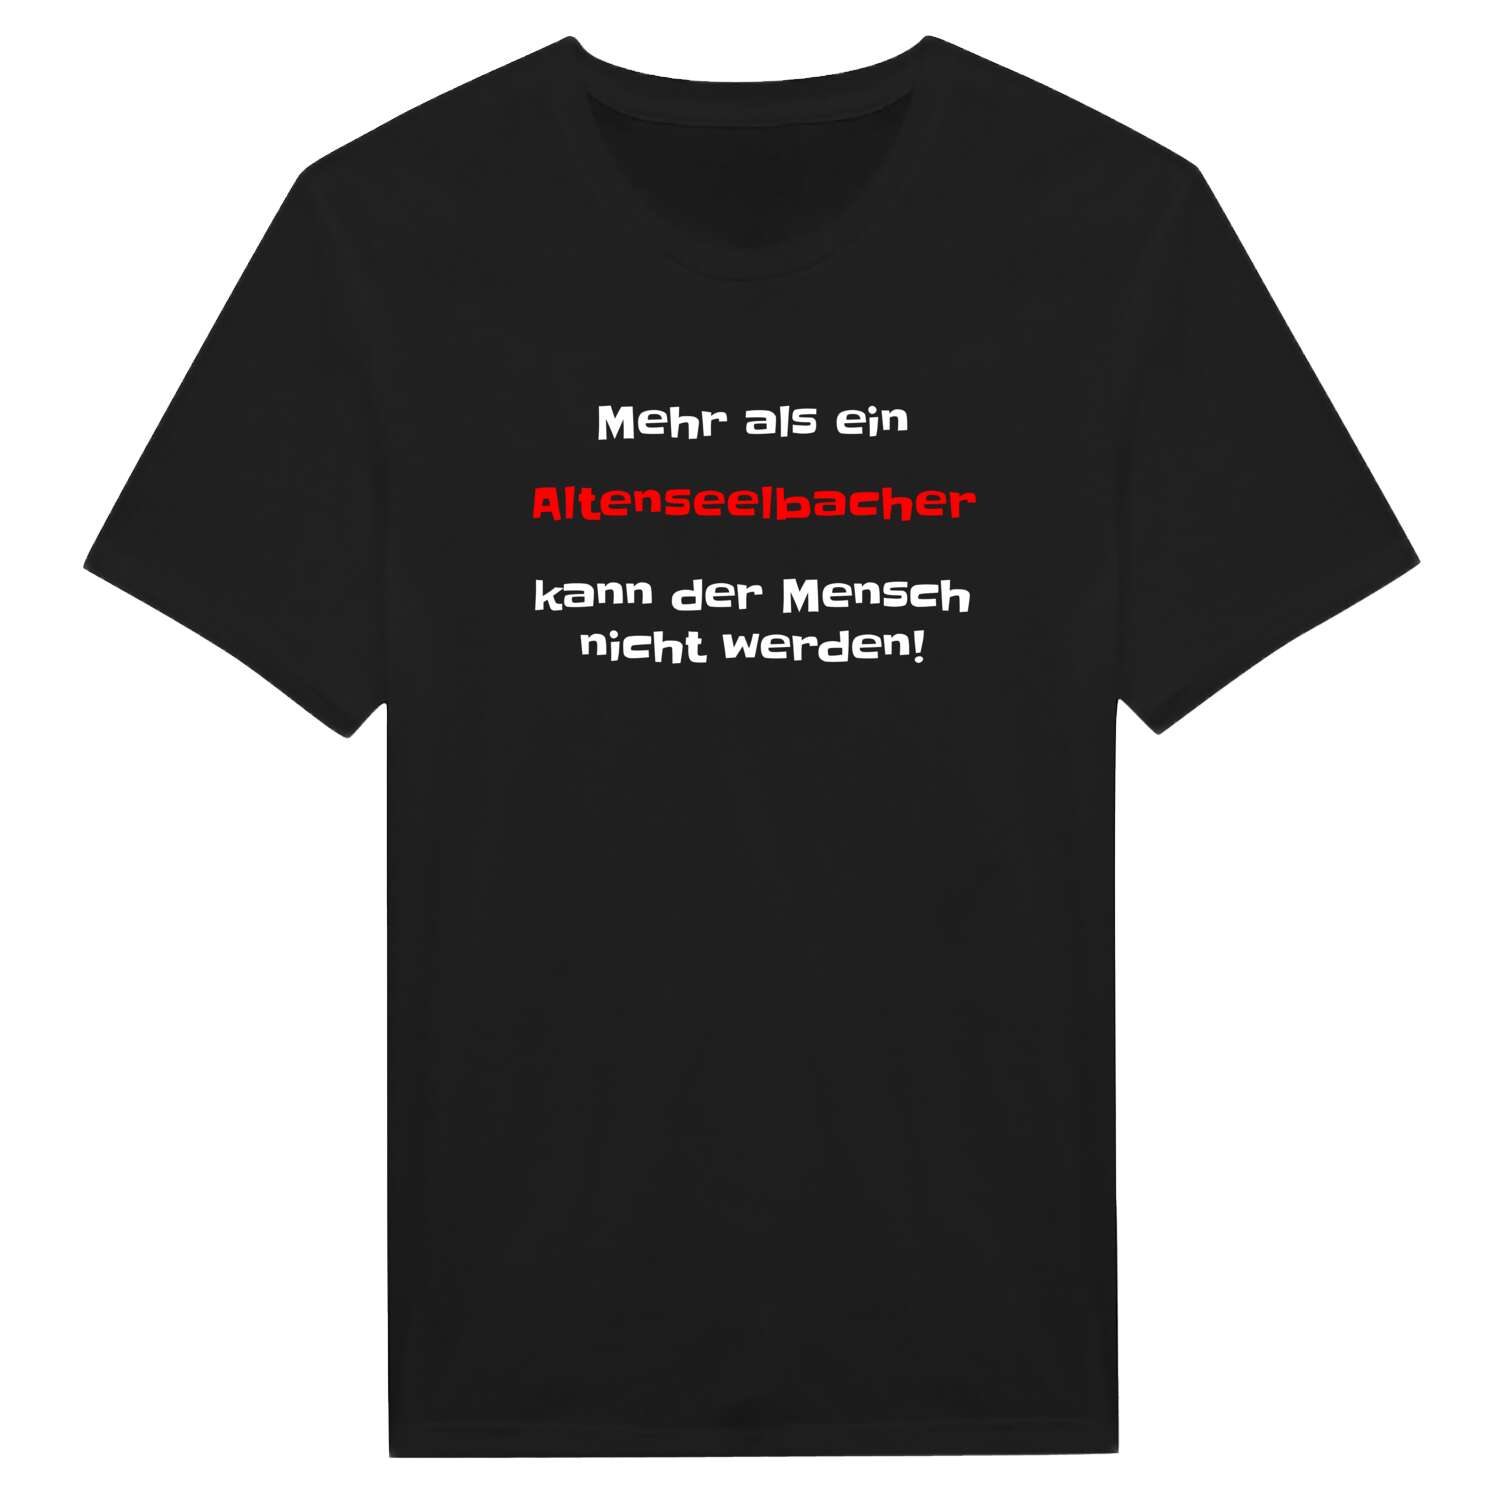 Altenseelbach T-Shirt »Mehr als ein«